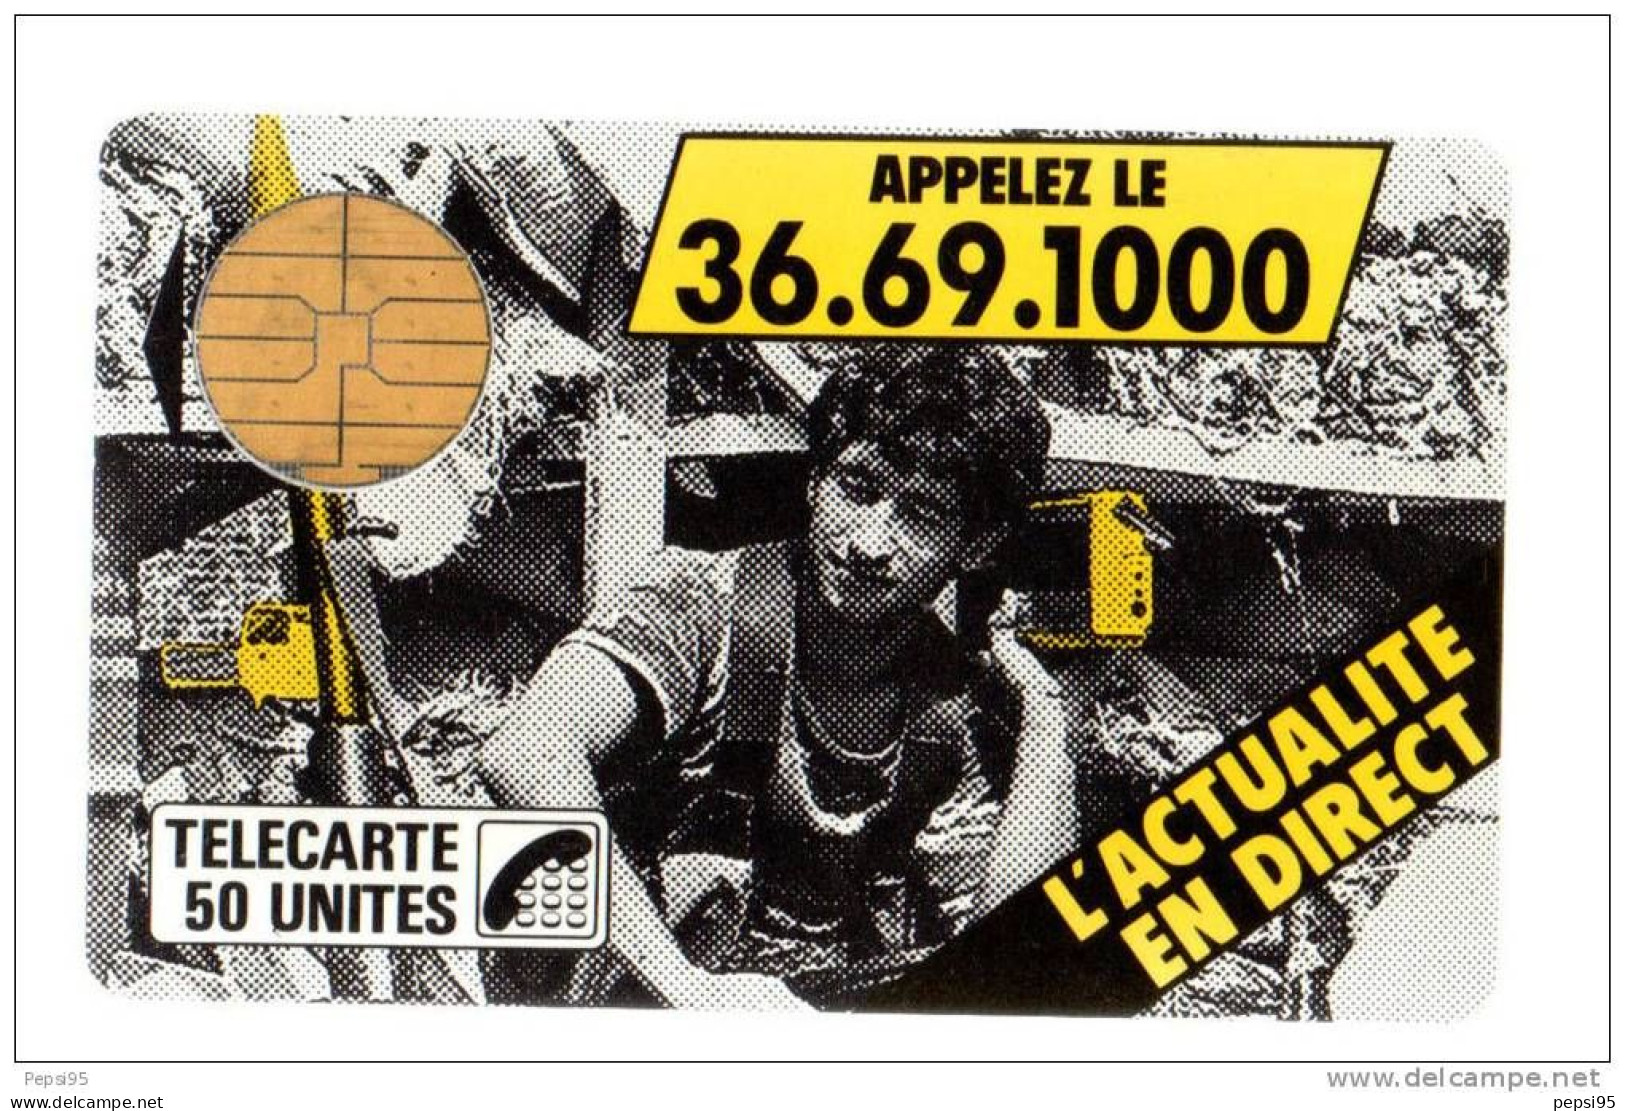 2 F2 - 05/1987 - TELECARTE 50 - L'ACTUALITE EN DIRECT Appelez Le 36.69.1000 - 1987